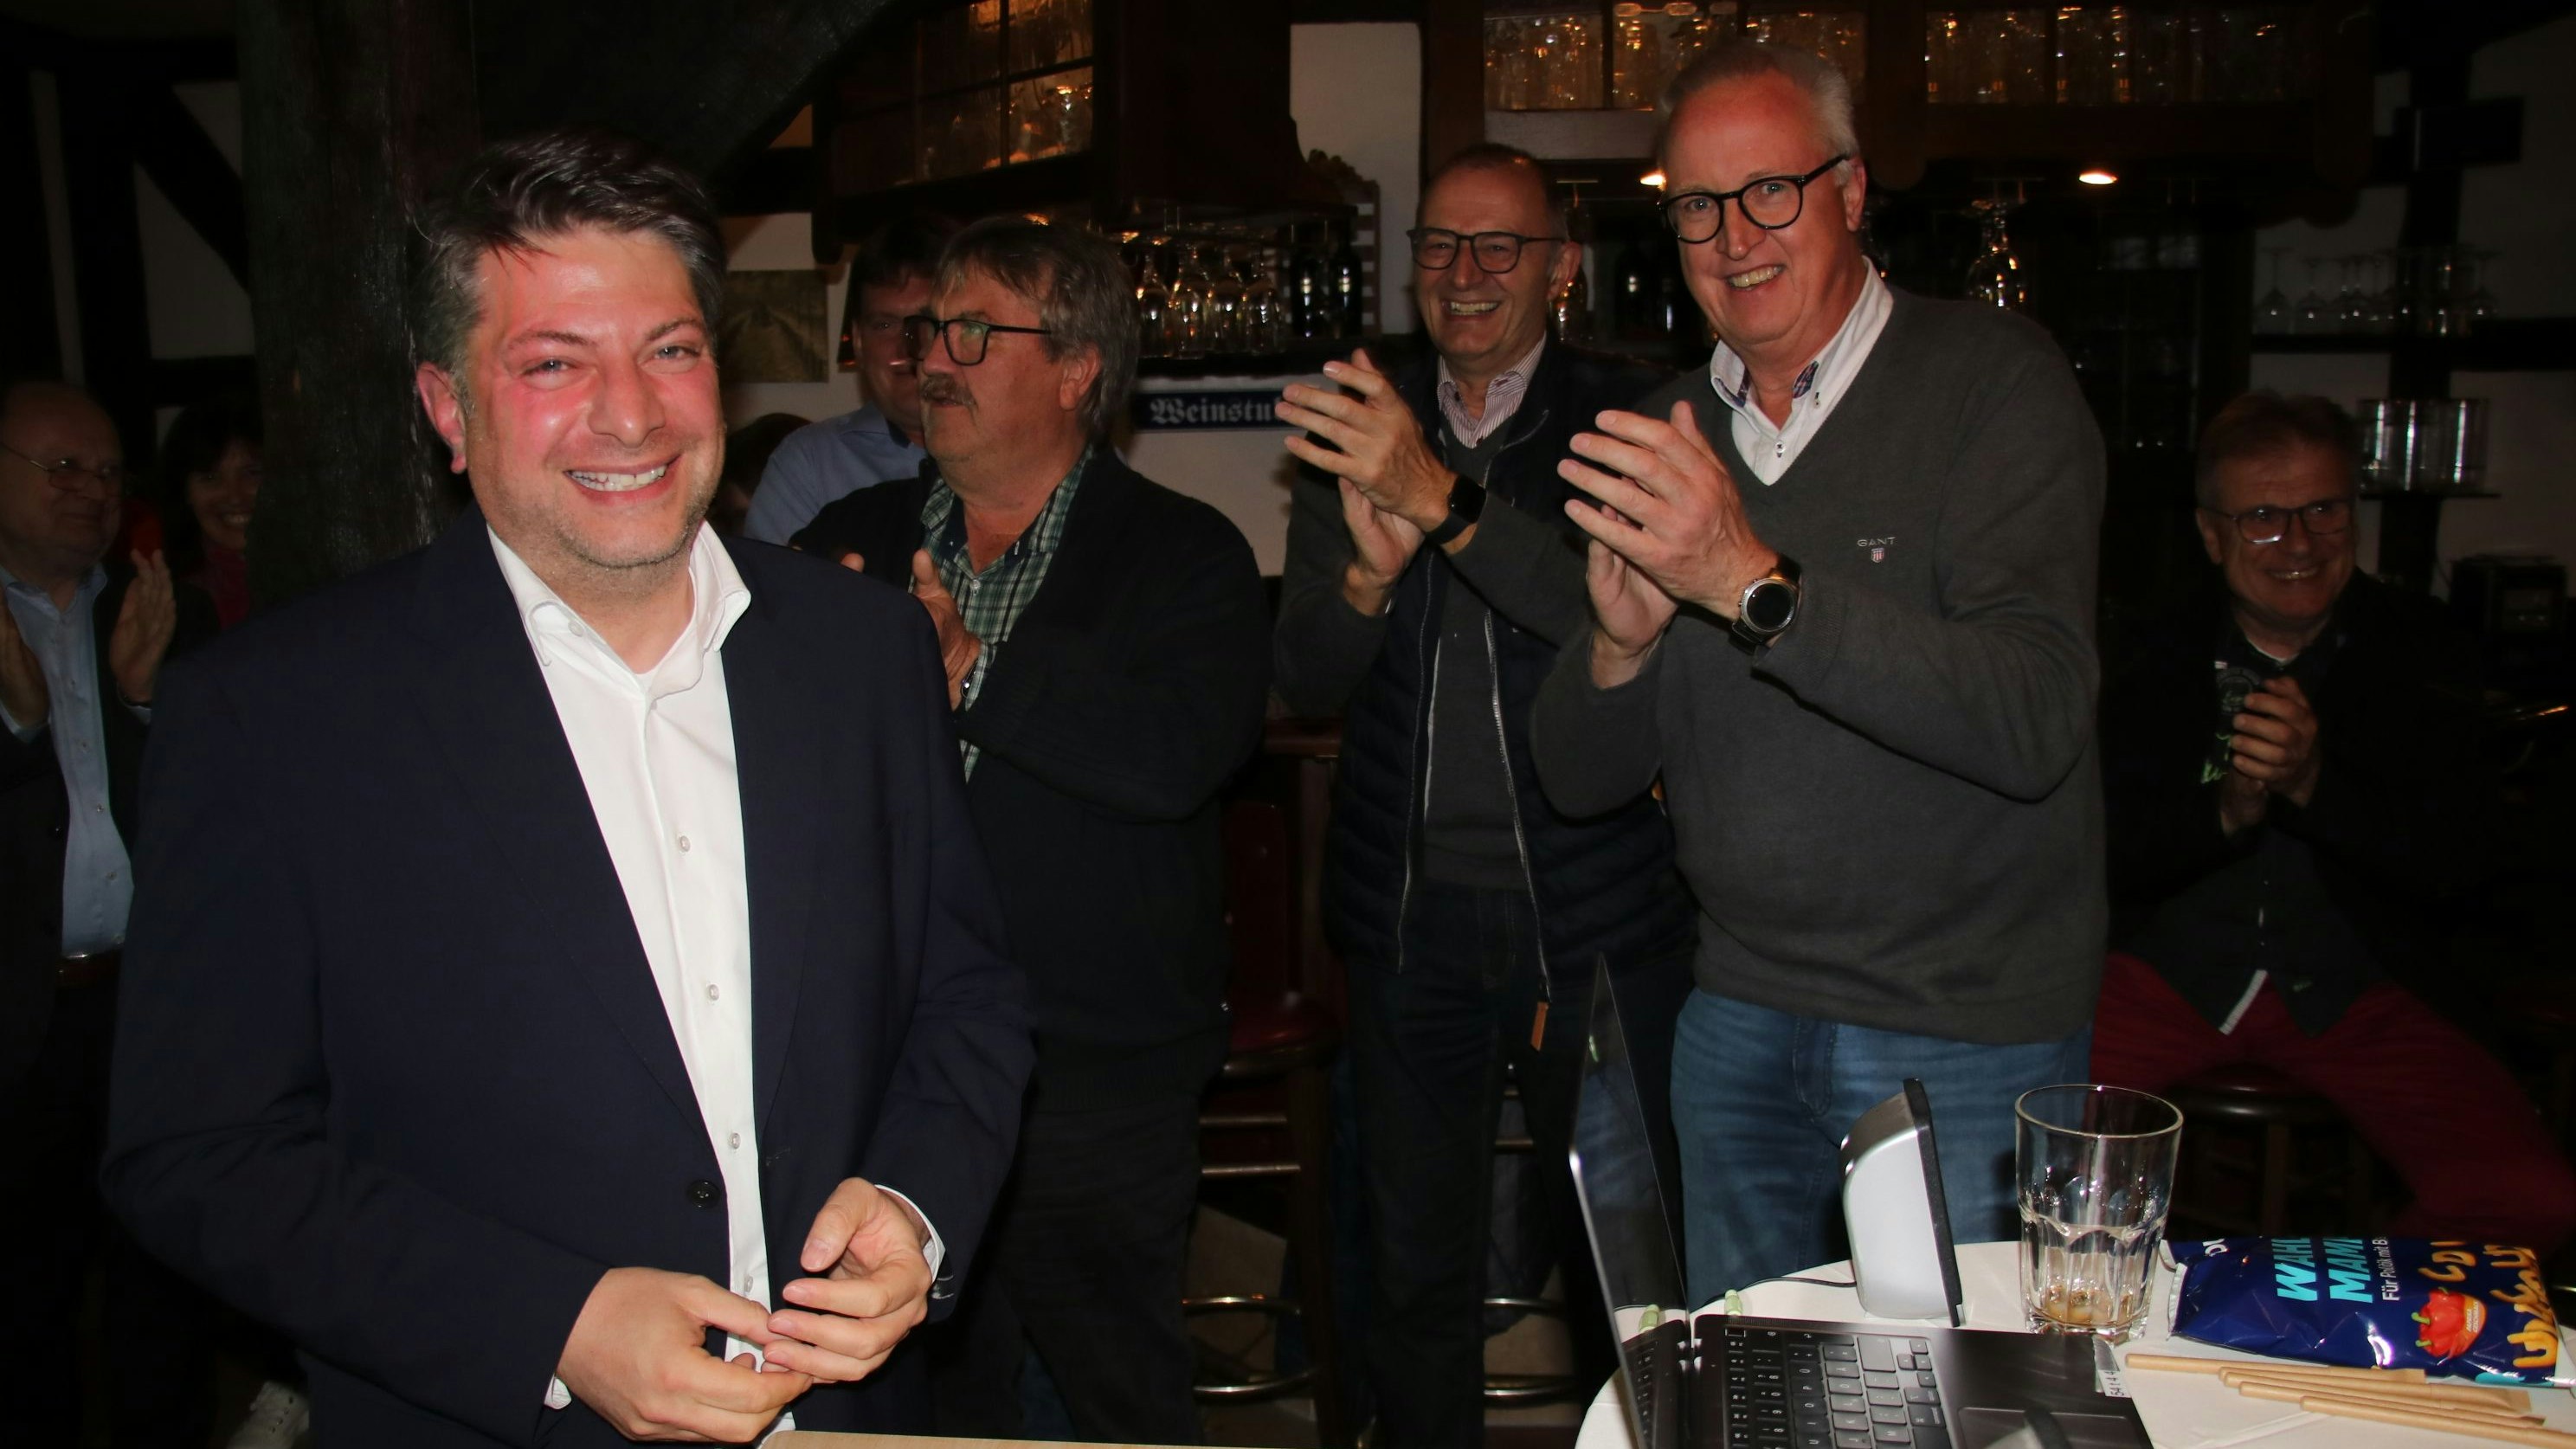 Am Ende strahlt er doch: Christian Calderone (links) genoss den Beifall seiner Parteifreunde, nachdem sein Wiedereinzug in den Niedersächsischen Landtag festgestanden hatte. Foto: Lammert